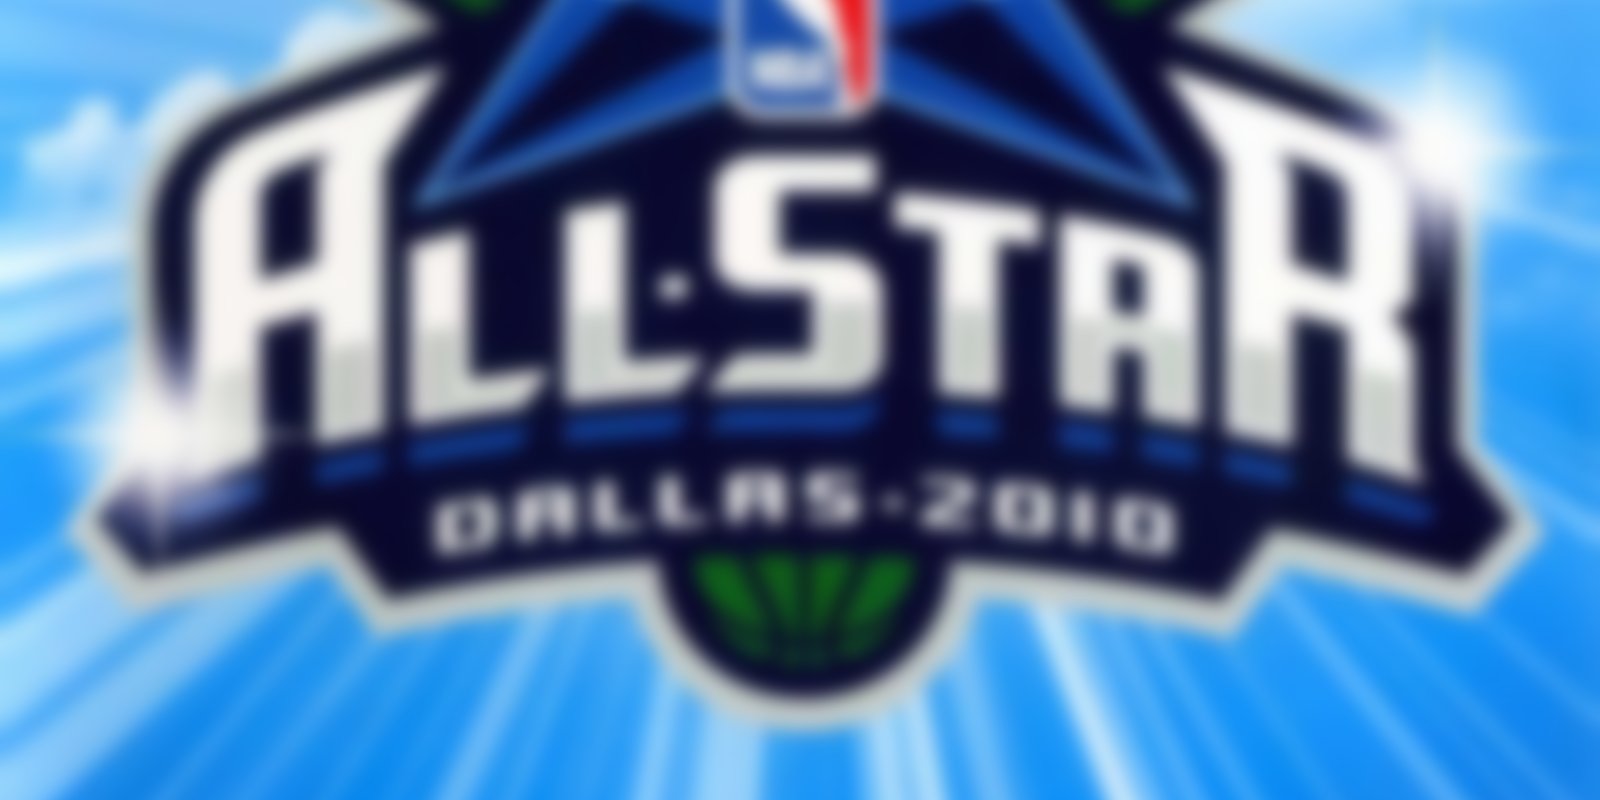 NBA All-Star Dallas 2010